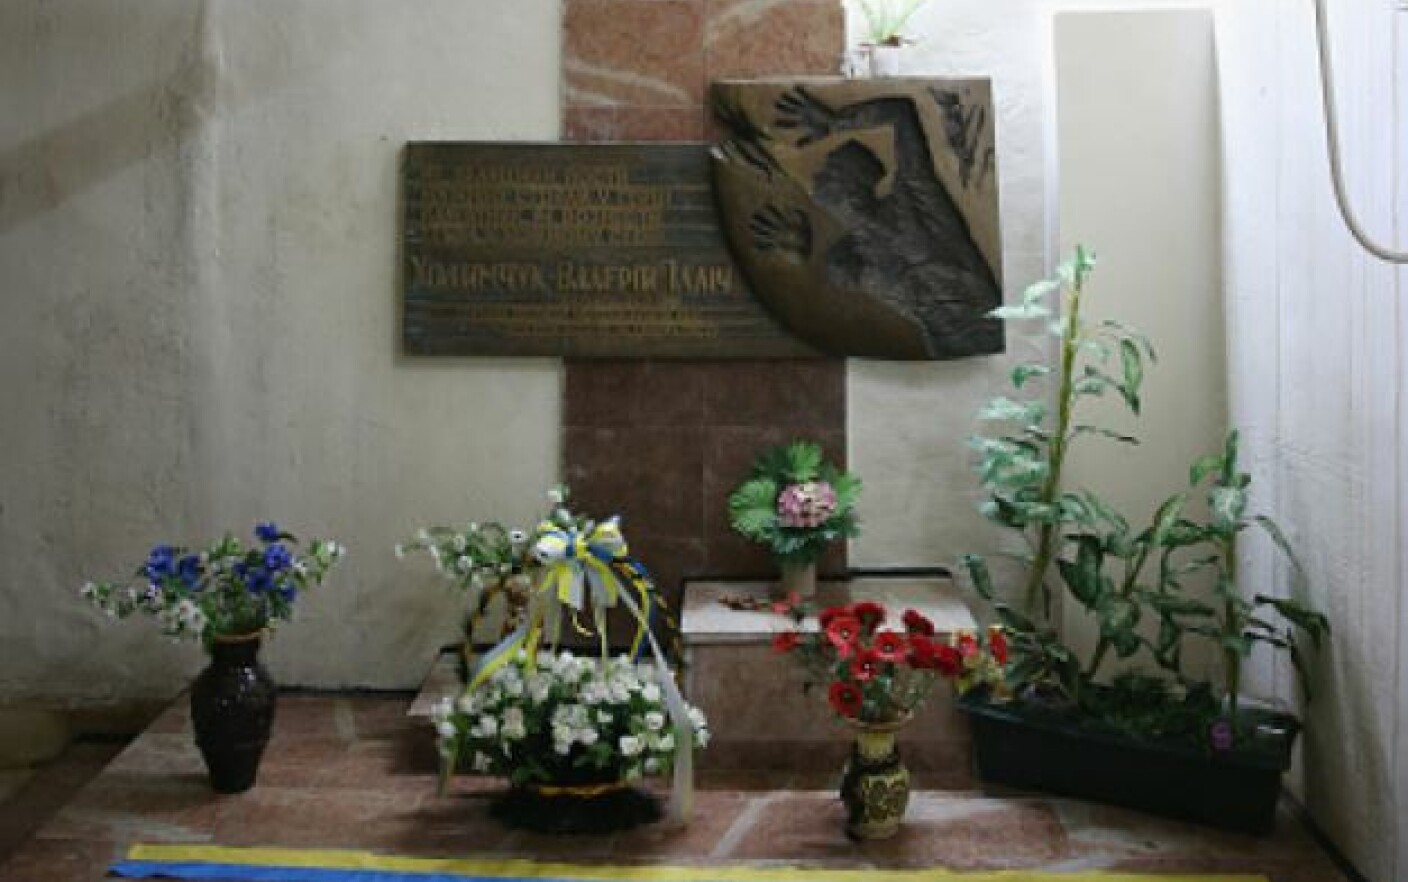 Altarul ridicat în memoria lui Valery Khodemchuk la Cernobîl